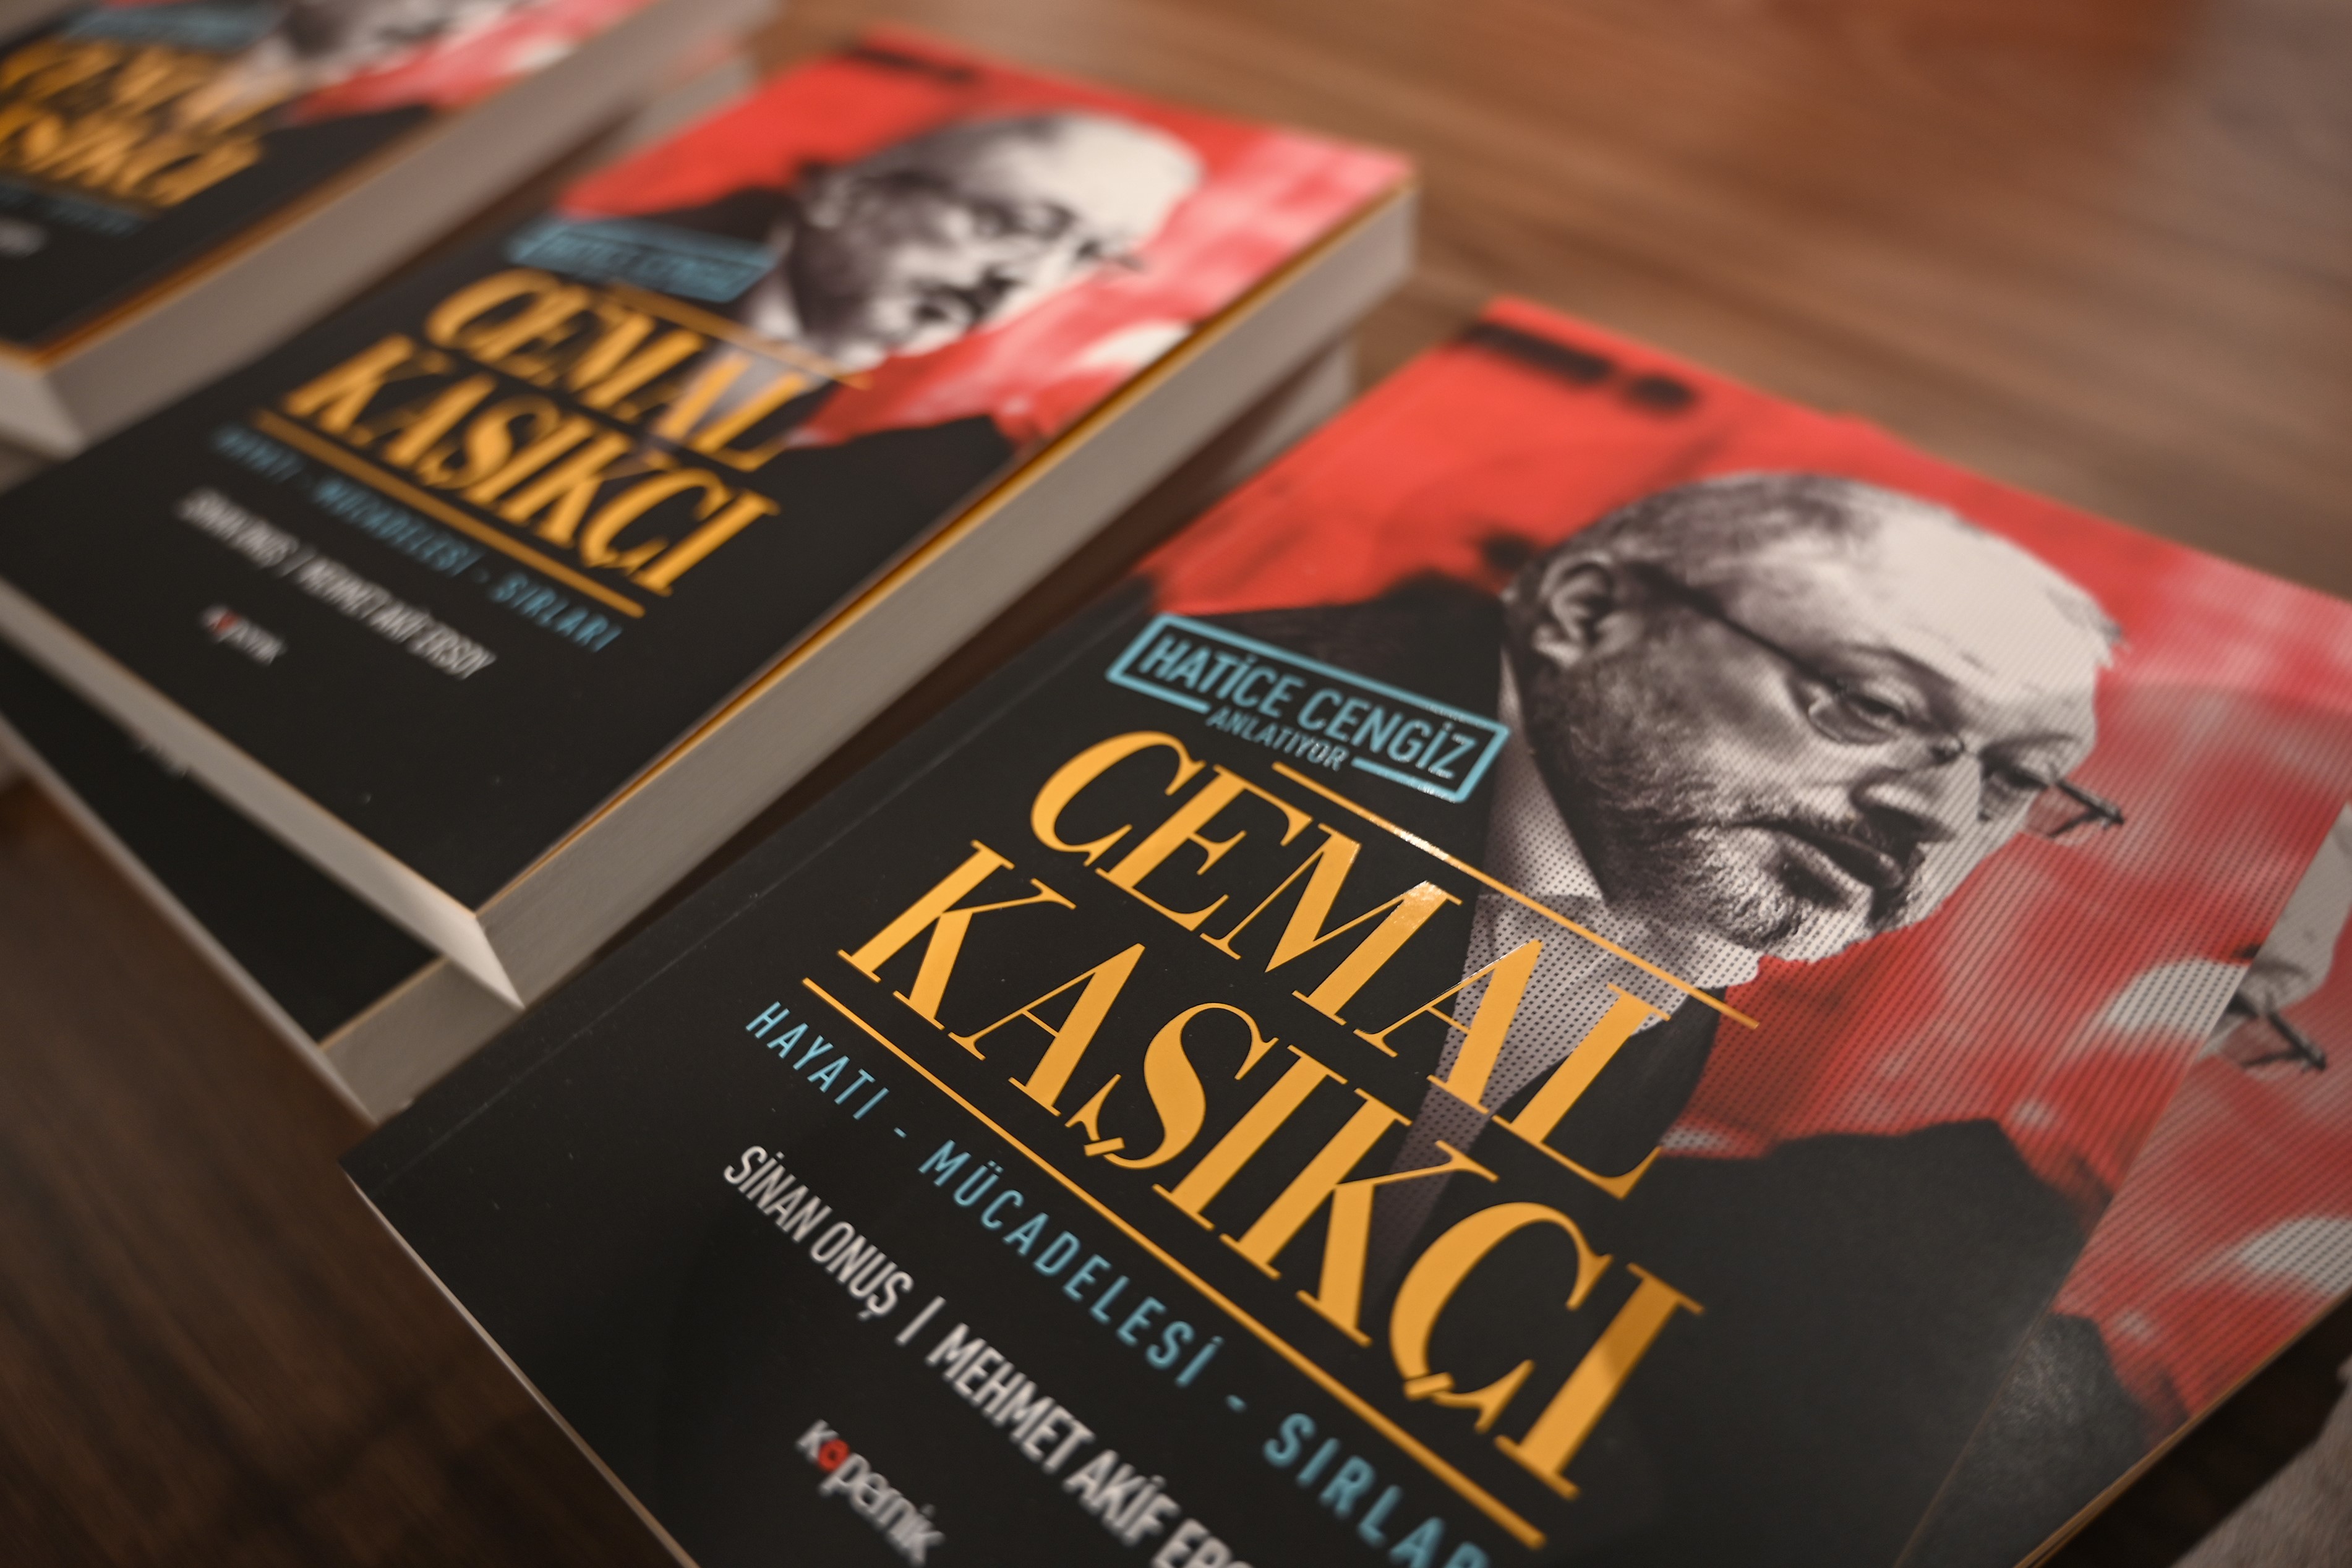 Des exemplaires de l’ouvrage consacré au journaliste assassiné Jamal Khashoggi écrit par sa compagne Hatice Cengiz sont exposés lors d’une présentation à Istanbul le 8 février (AFP)